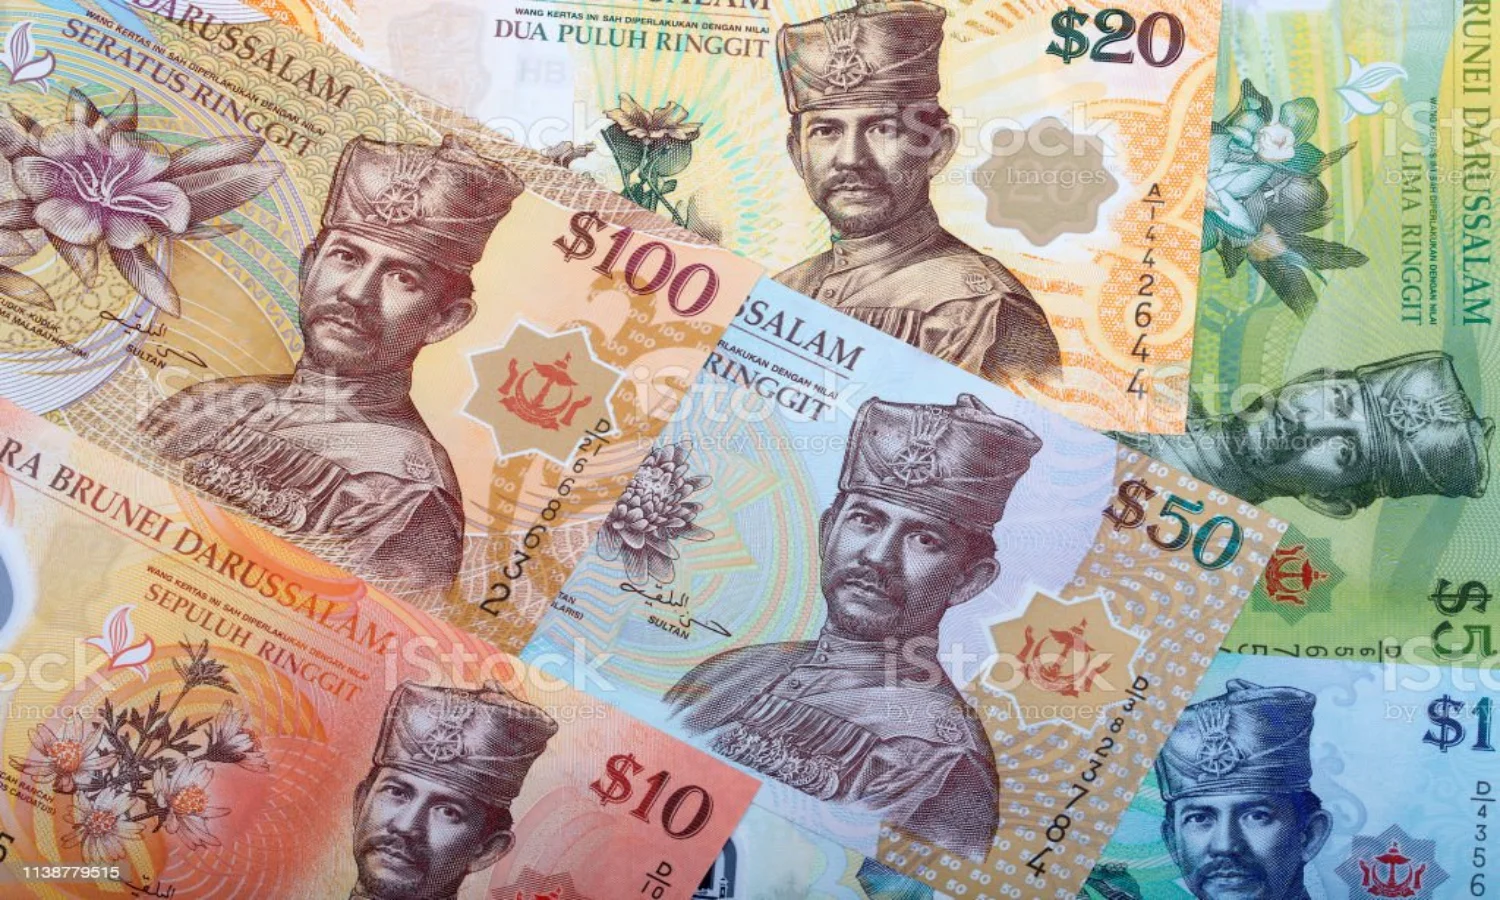 Brunei uang darussalam dolar negara daftar tenggara kadar asing tukaran wang ringgit